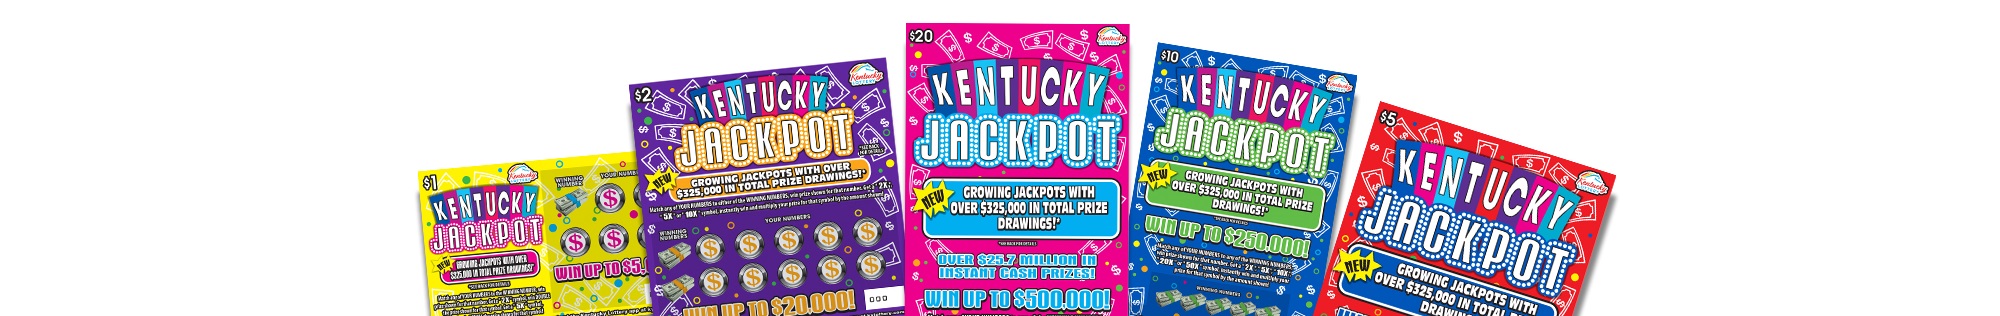 Kentucky Jackpot